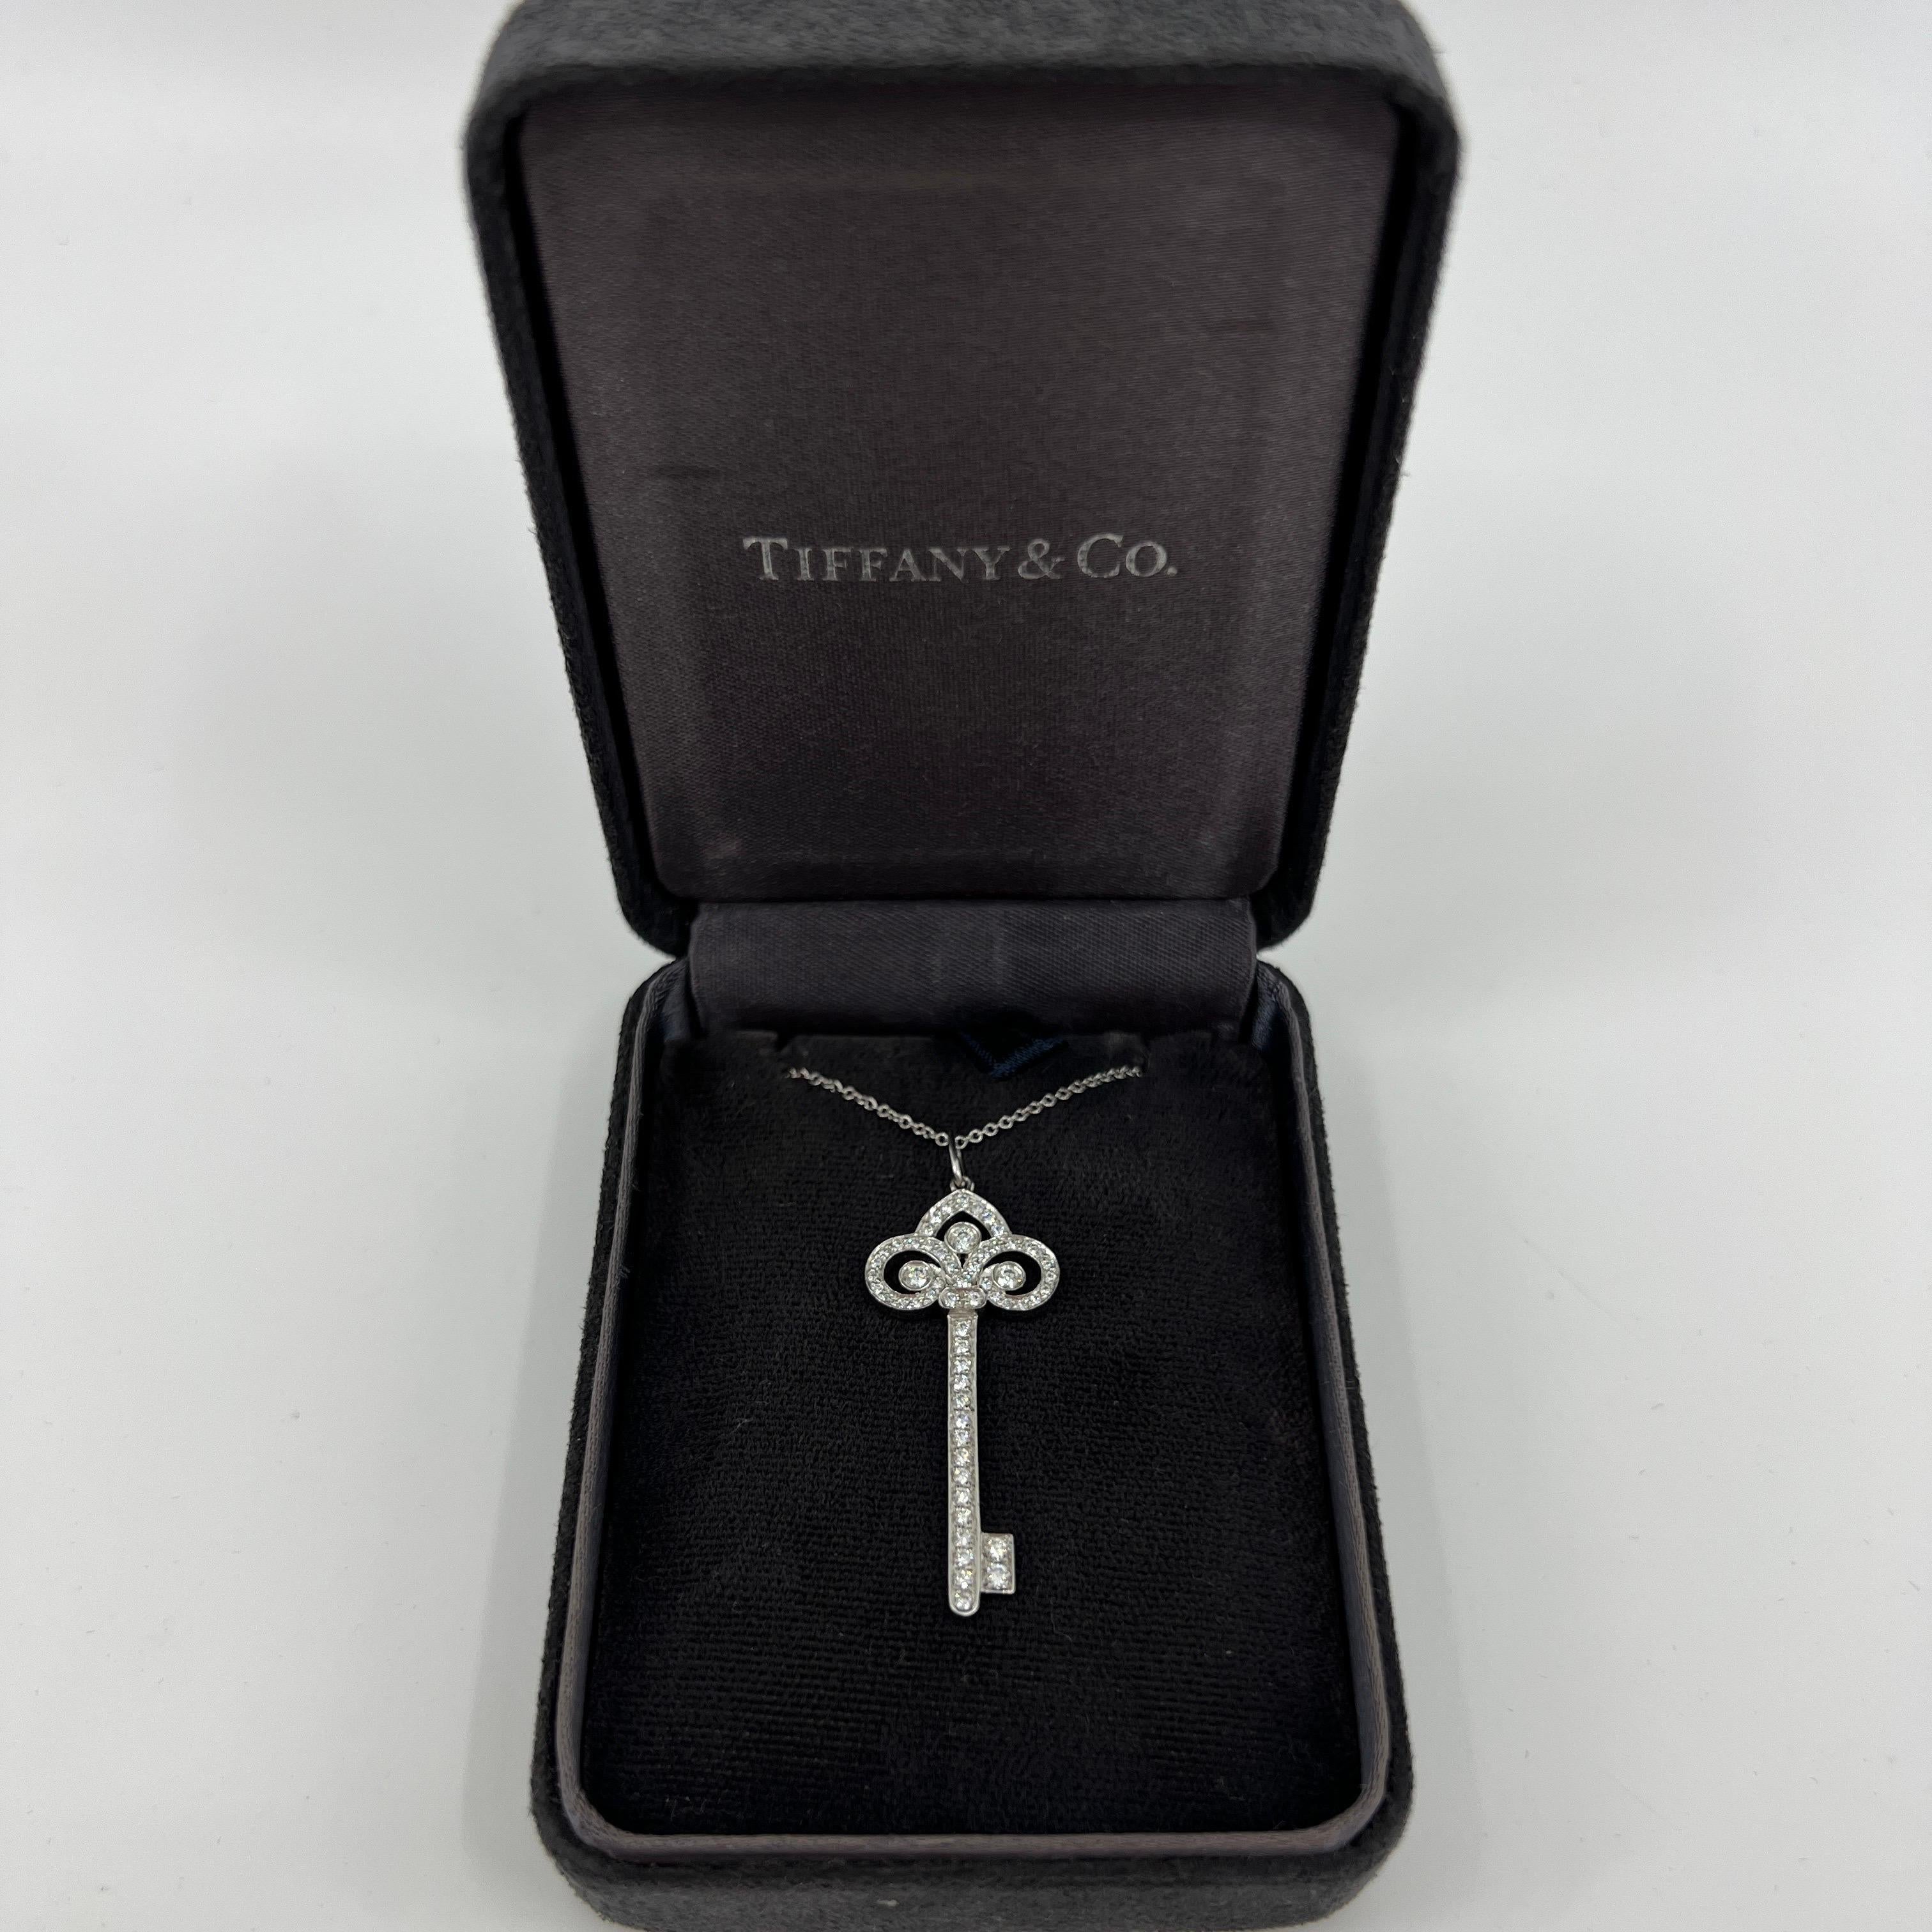 Tiffany & Co. 'Fleur de Lis' Diamond Platinum 1.5 Inch Key Pendant Necklace.

Un magnifique et rare pendentif clé authentique de Tiffany conçu dans le style Fleur-De-Lis. Les clés Brilliante sont 